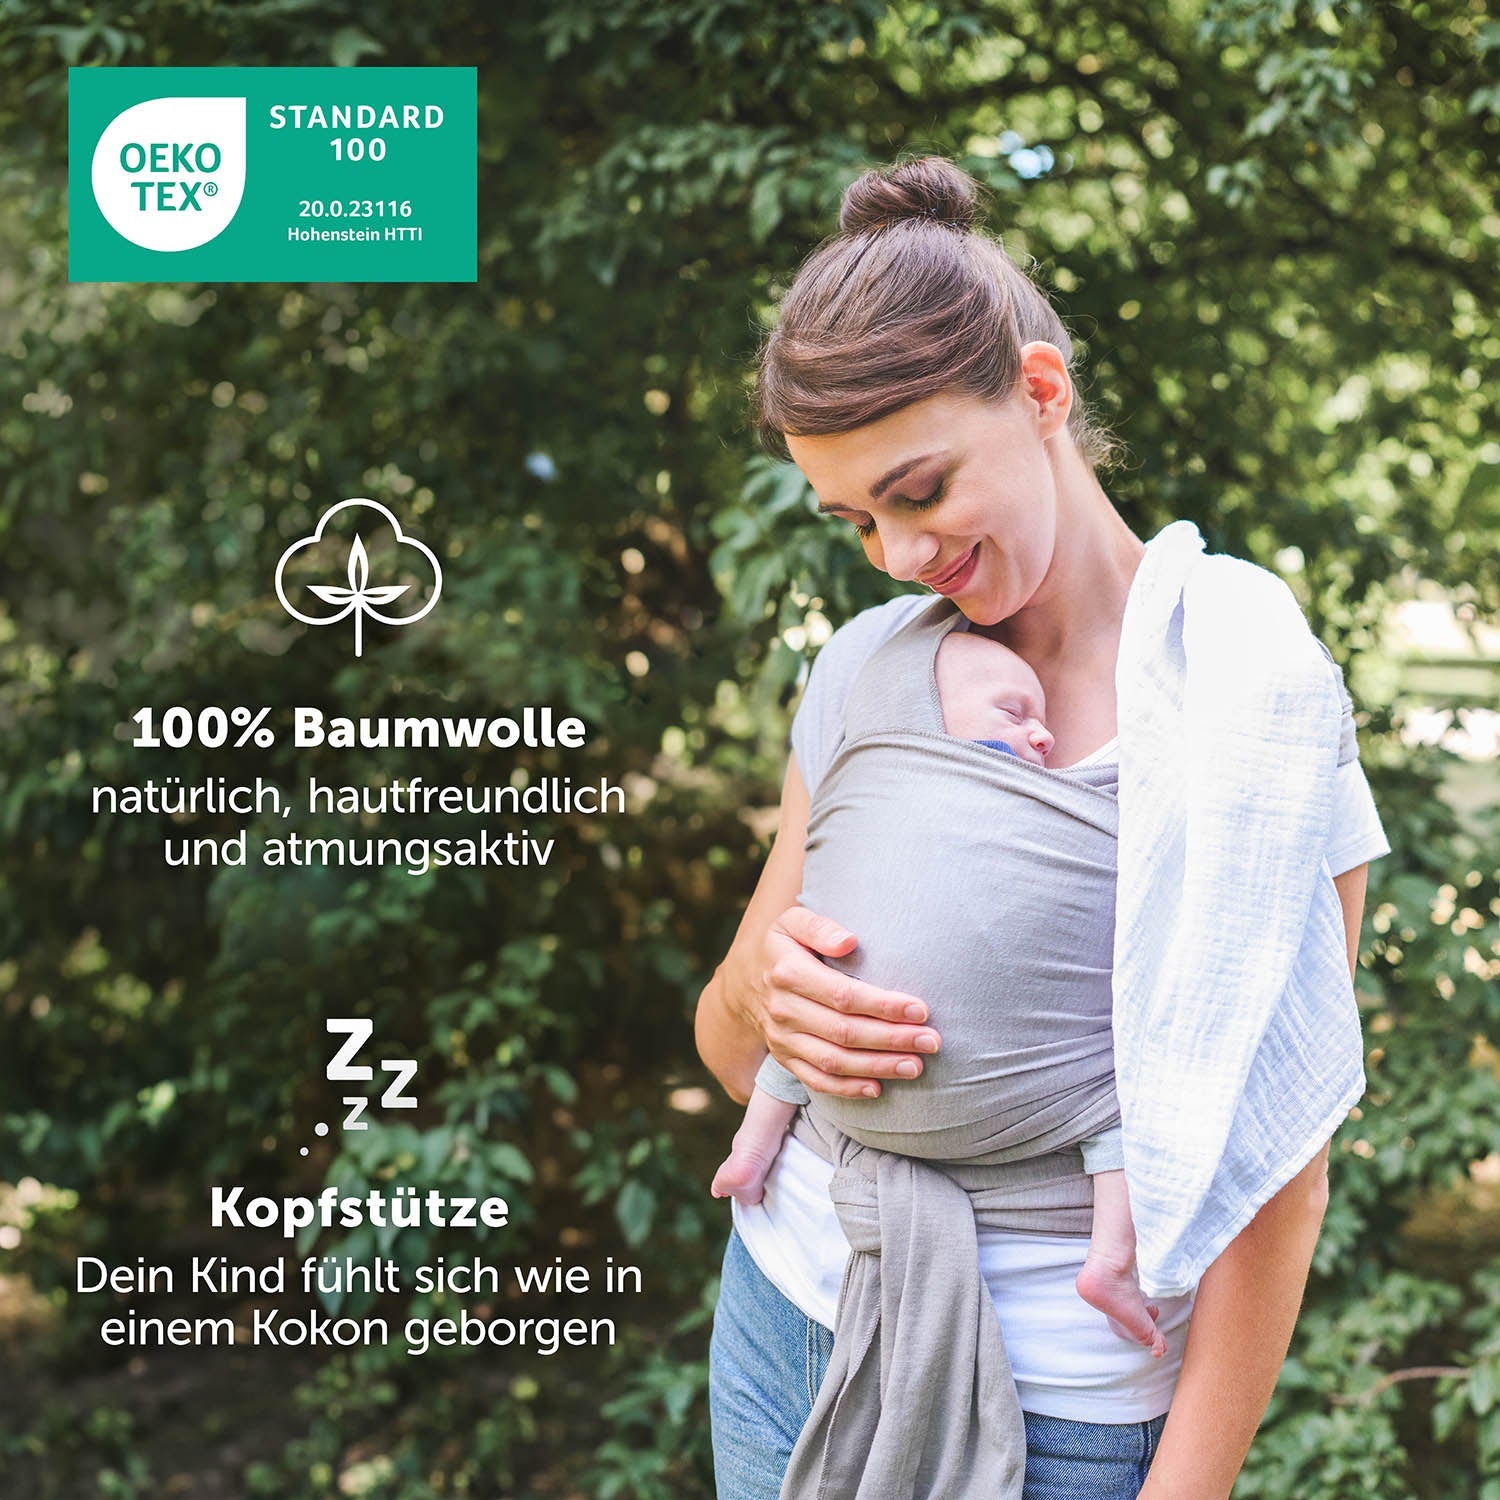 Frau im Profil trägt schlafendes Baby in grüner Tragehilfe Öko-Tex Siegel und Produktinformationen sind eingeblendet.